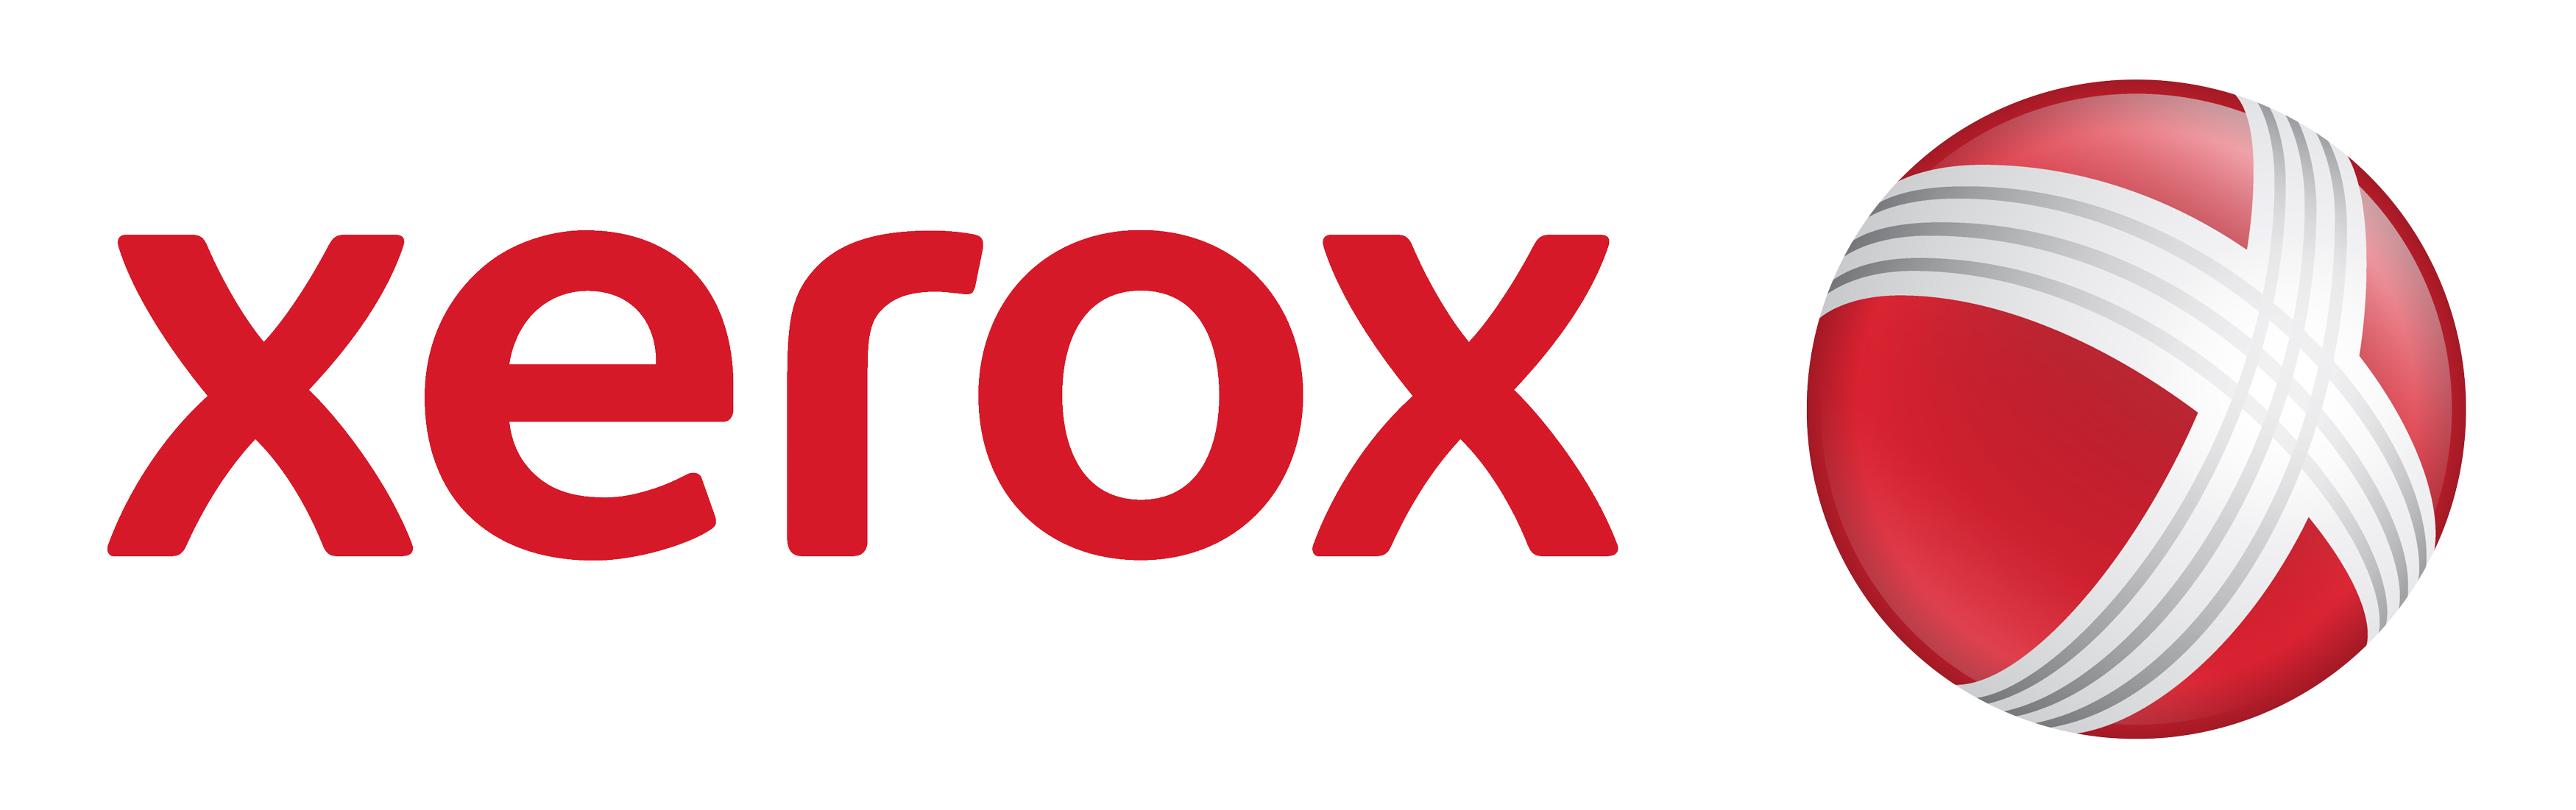 Xerox Logo PNG - 30311